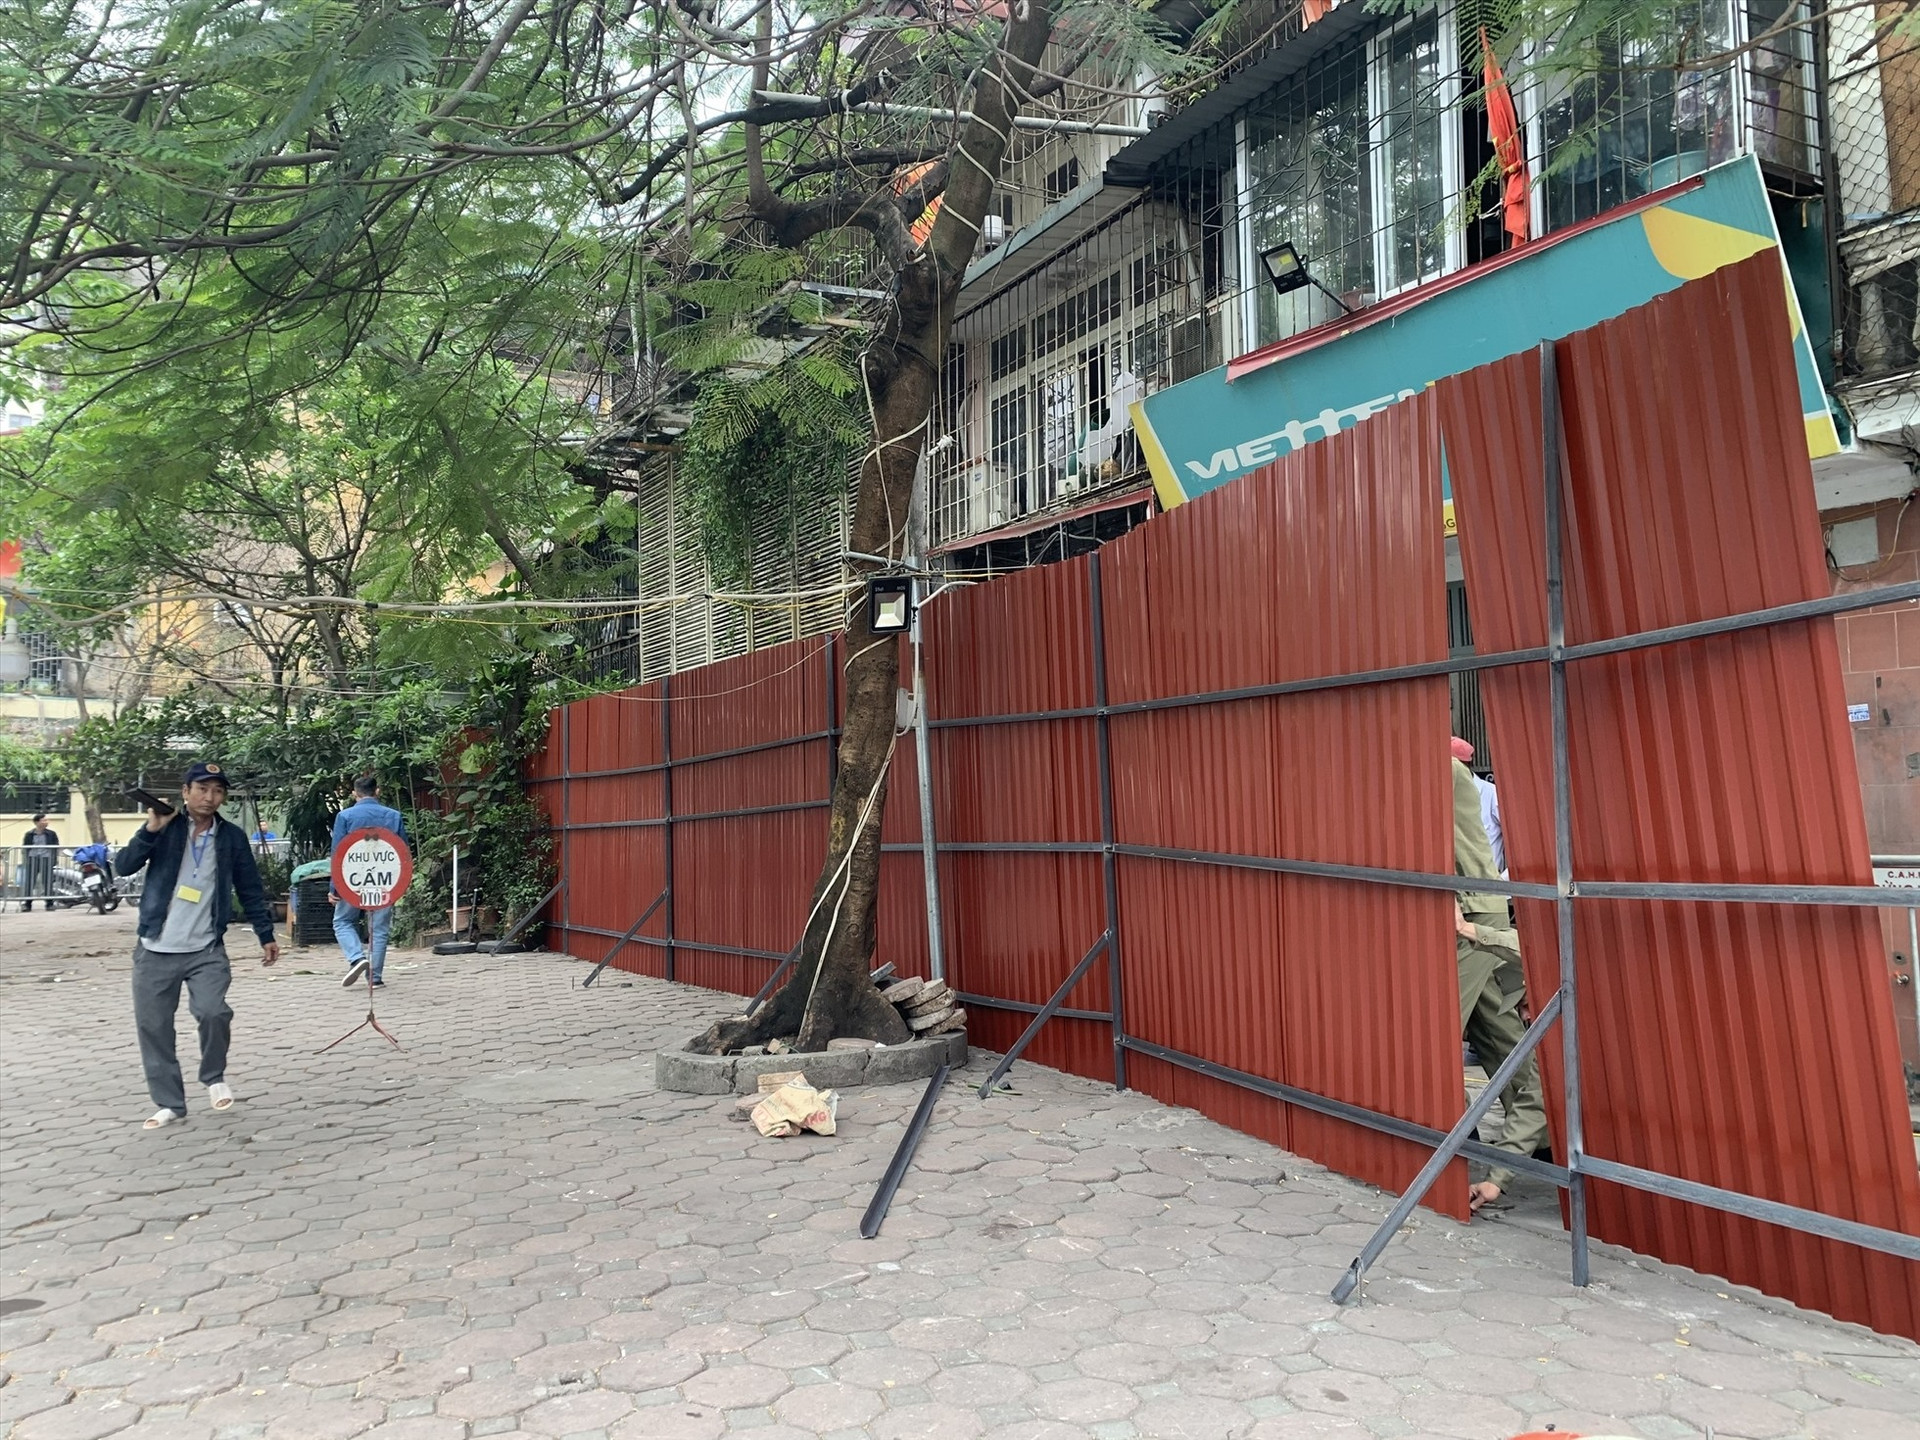 Hà Nội rào tôn quanh chung cư cũ Thành Công nguy hiểm cấp độ D - 1